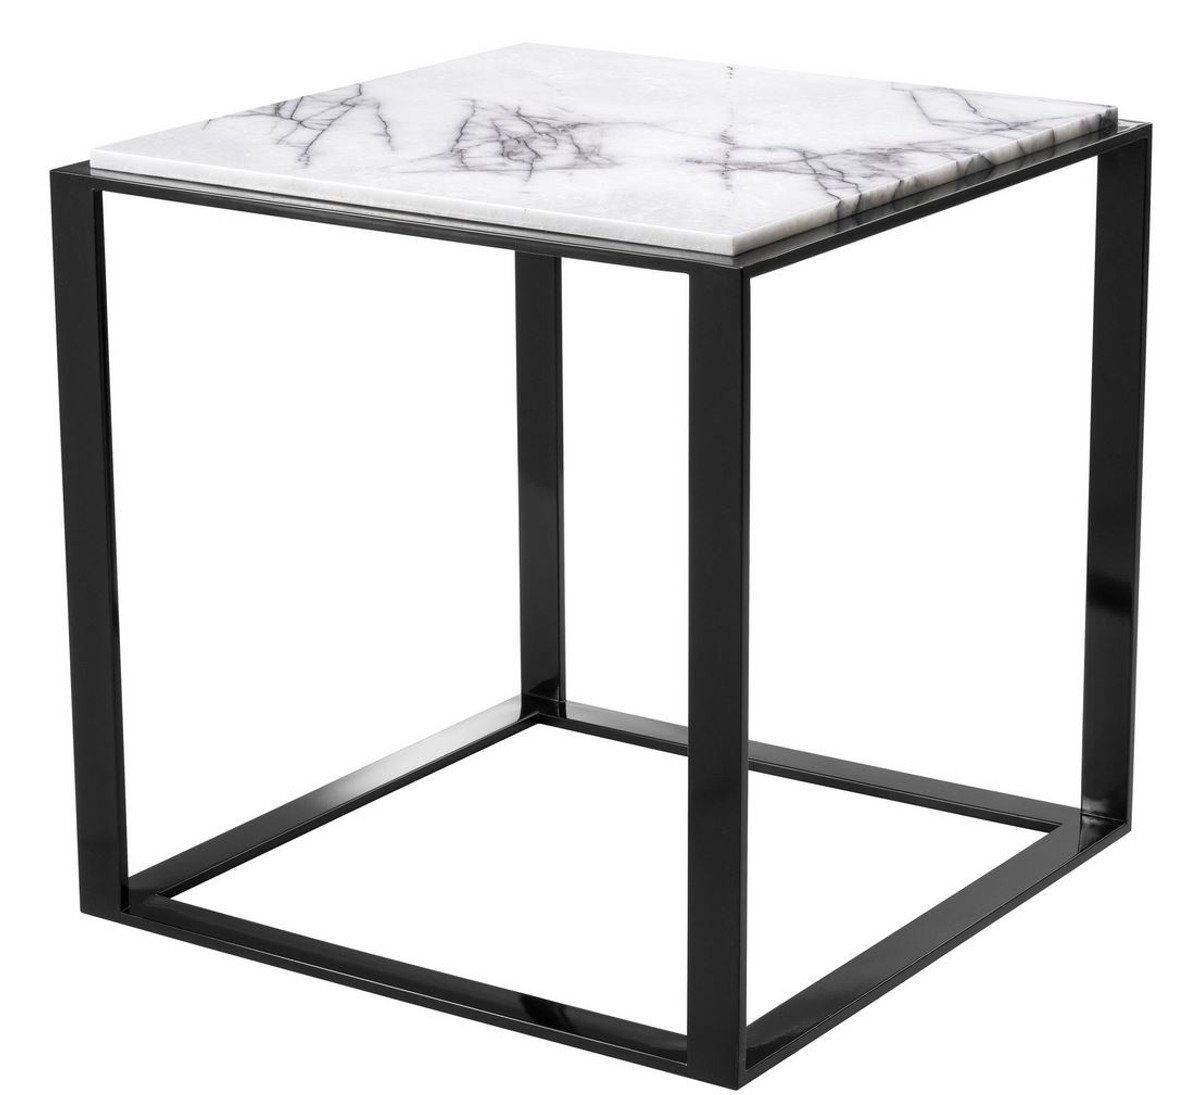 Casa Padrino Beistelltisch Luxus Beistelltisch Hochglanzschwarz / Weiß-Lila 56 x 56 x H. 56 cm - Edelstahl Tisch mit Marmorplatte - Luxus Möbel